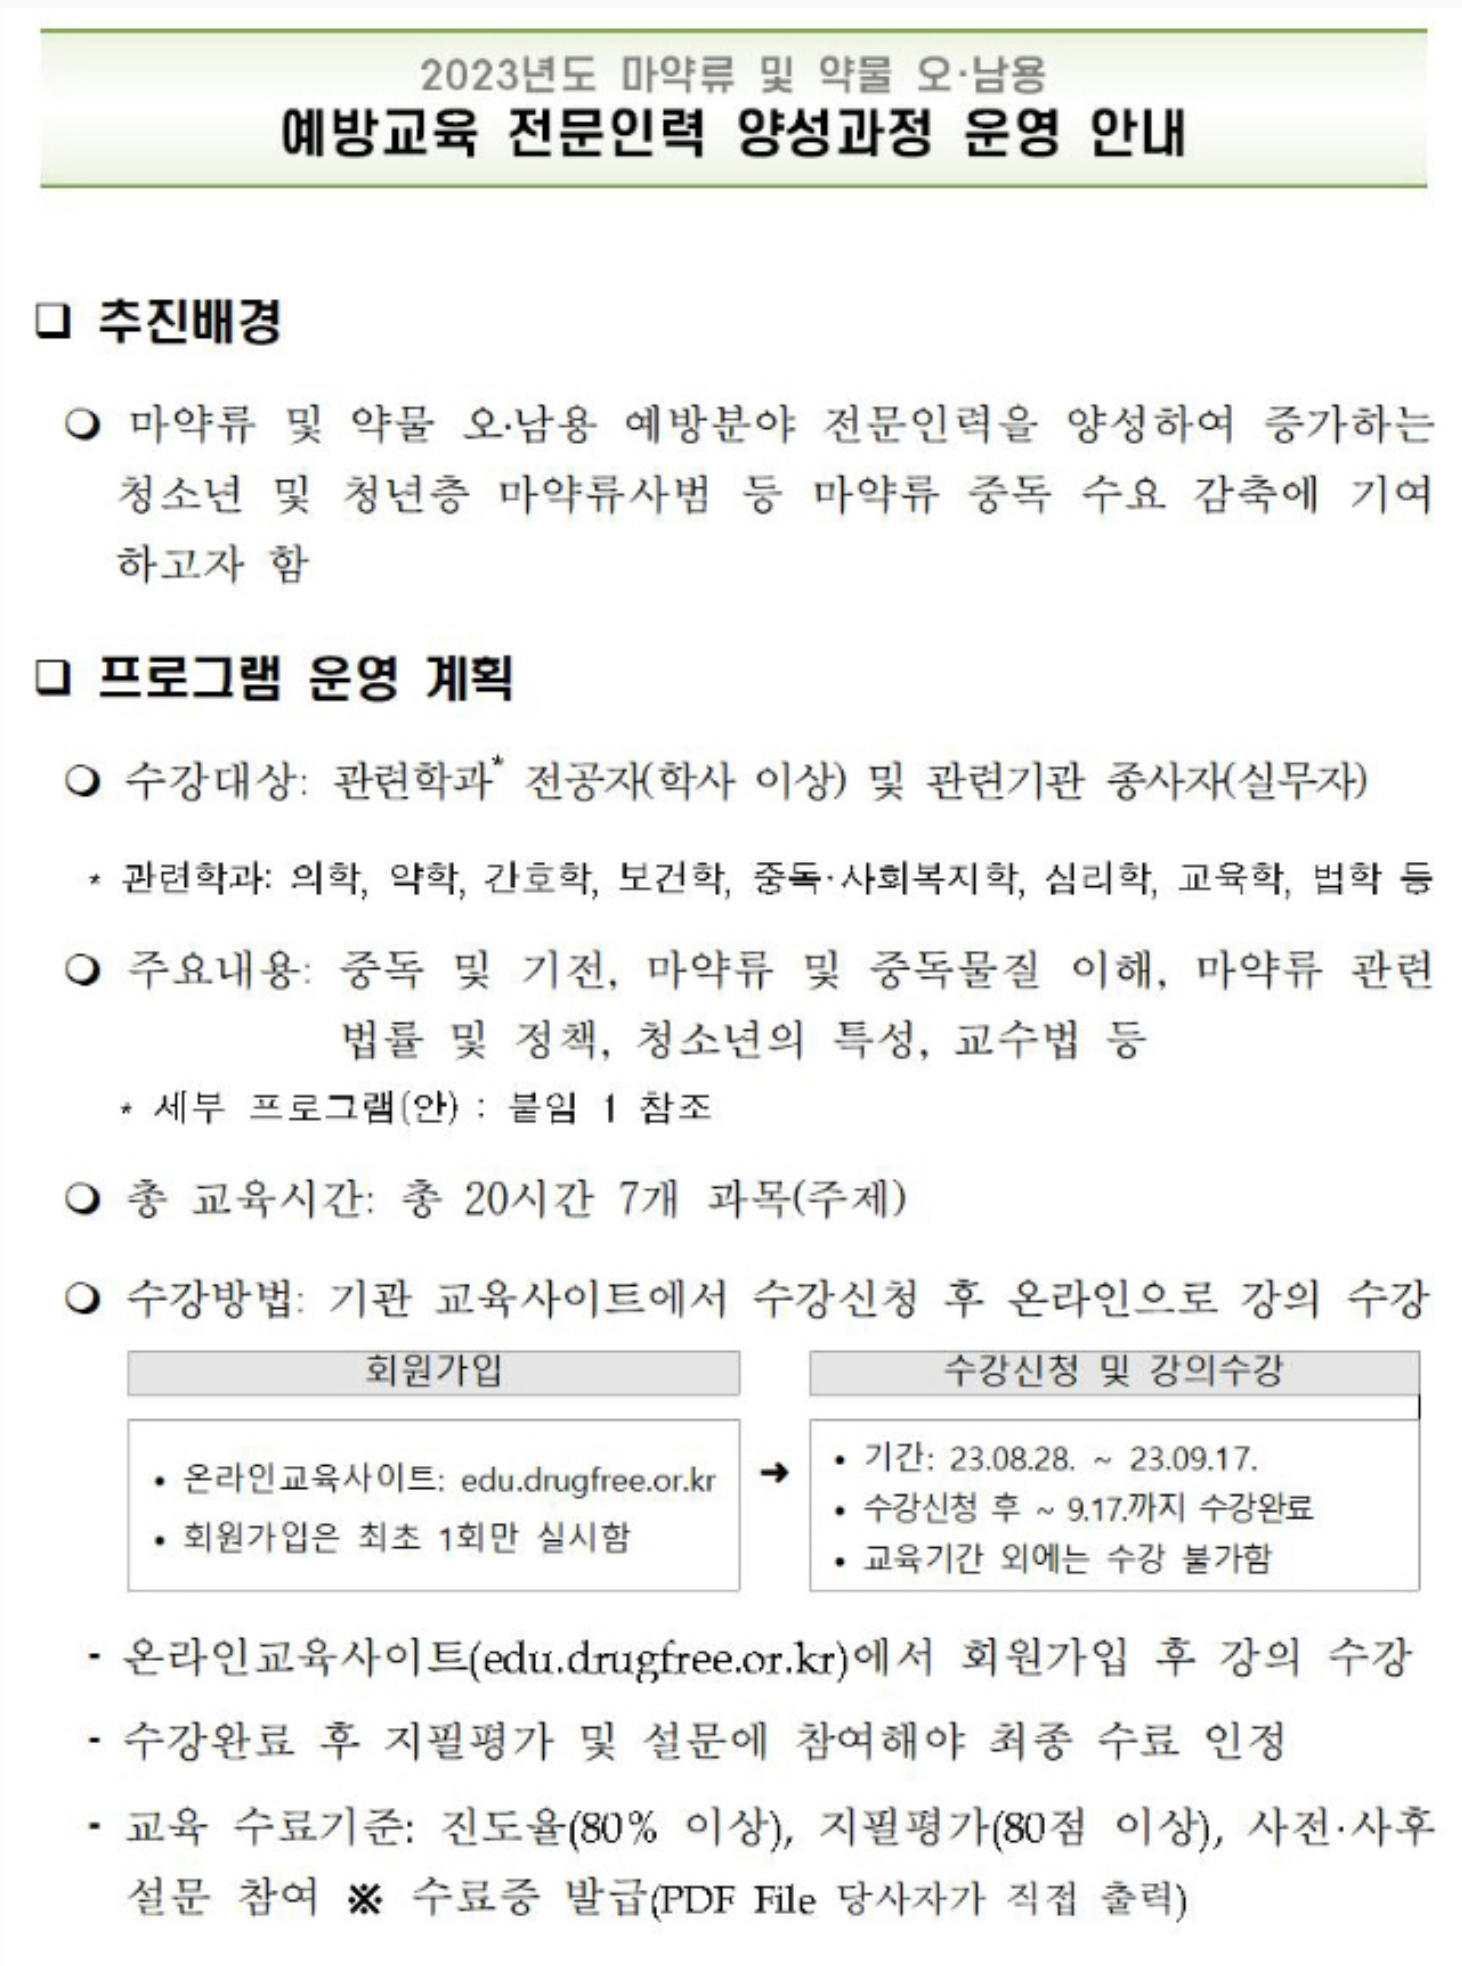 한국마약퇴치운동본부 예방교육 전문인력 양성과정 (edu.drugfree.or.kr)